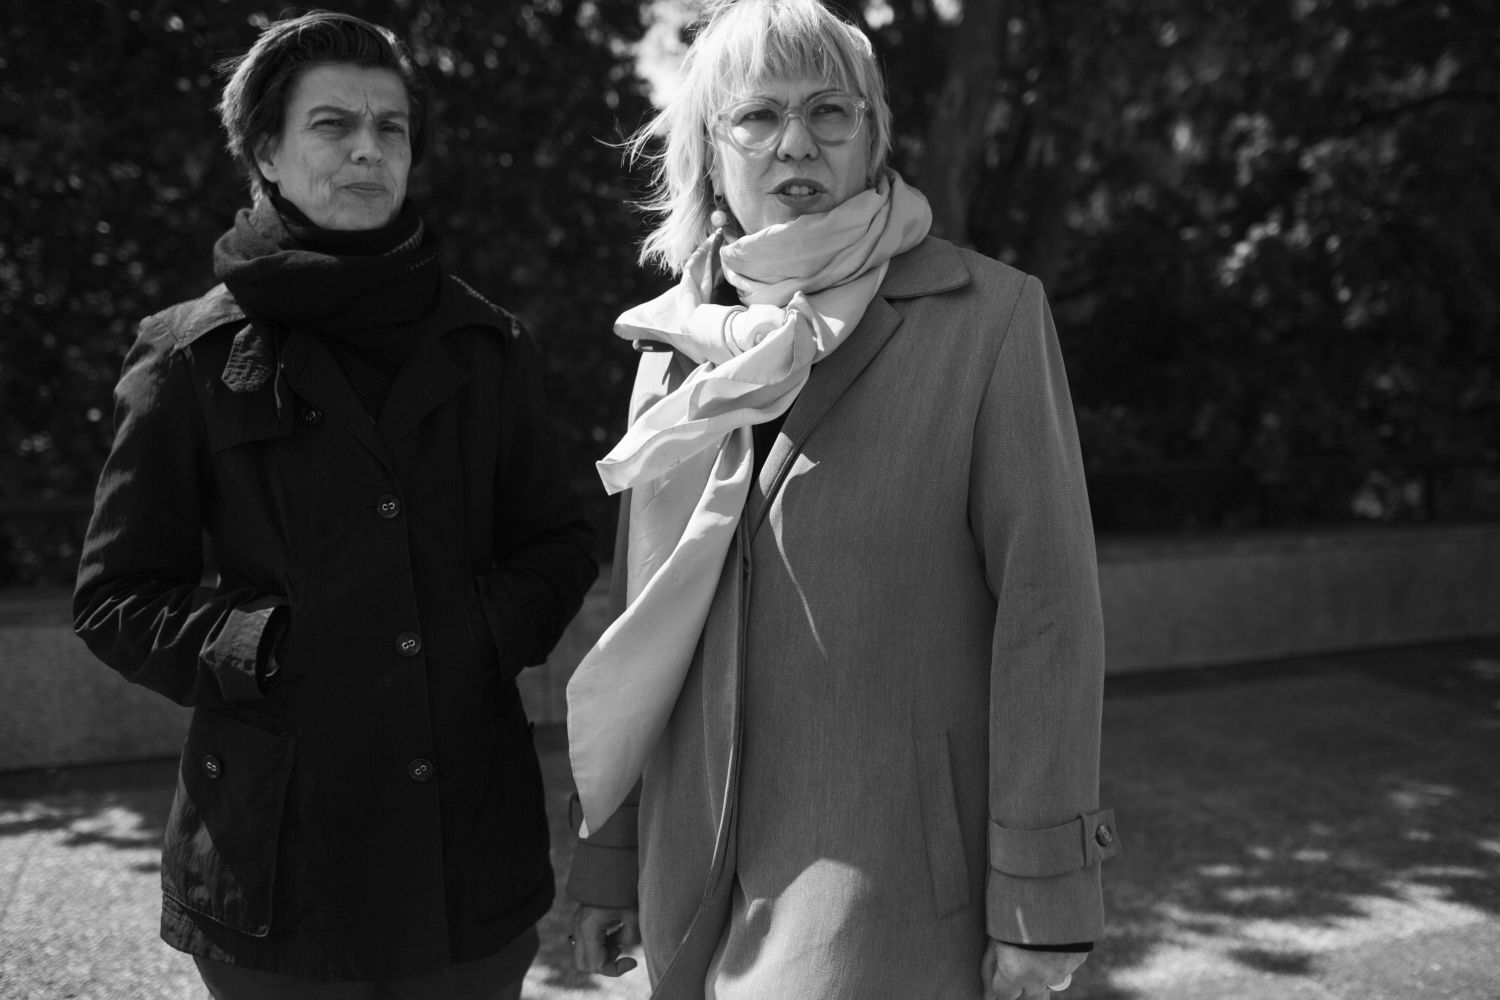 Carolin Emcke und Andrea Petö mit Jacken und Schals draußen.